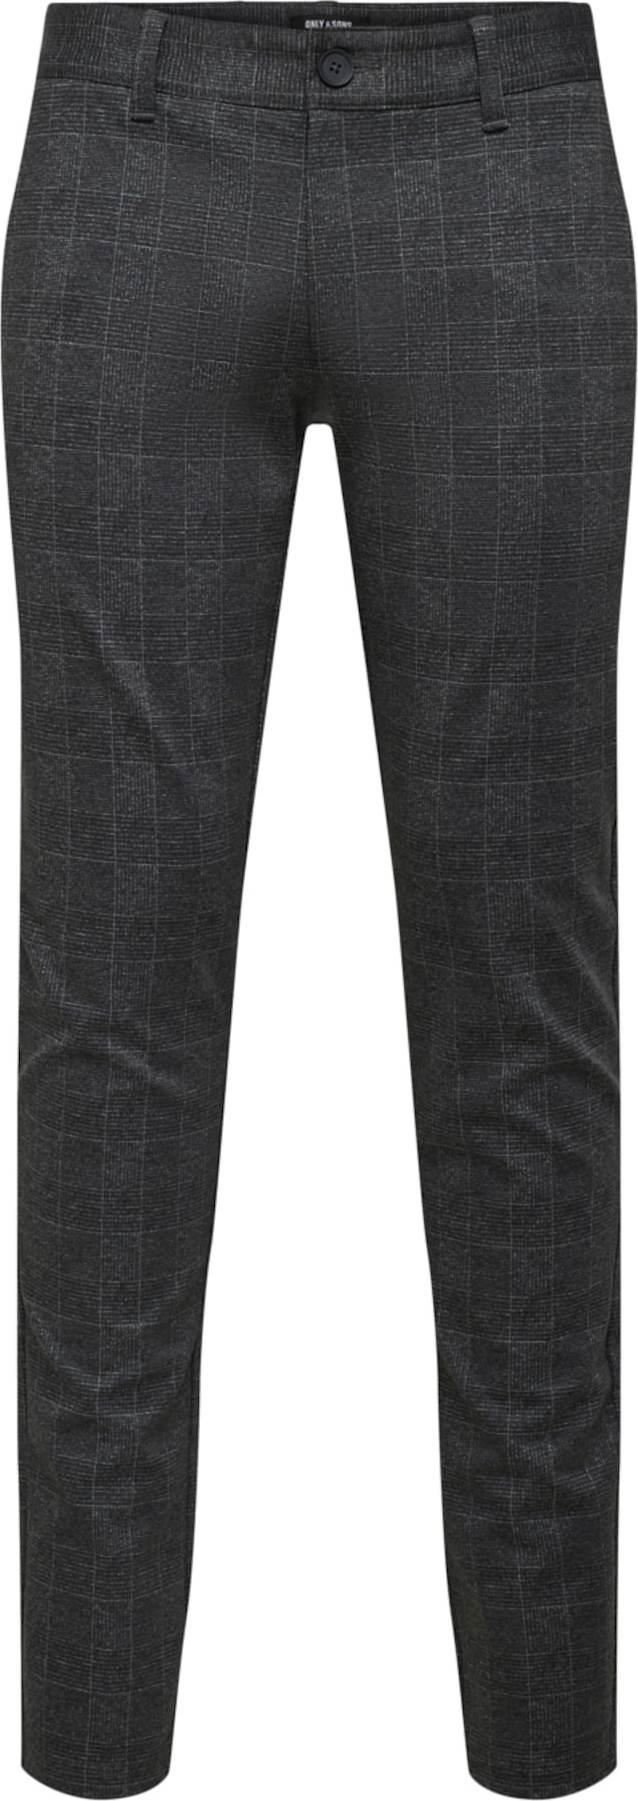 Only & Sons Chino kalhoty 'Mark' šedá / černý melír